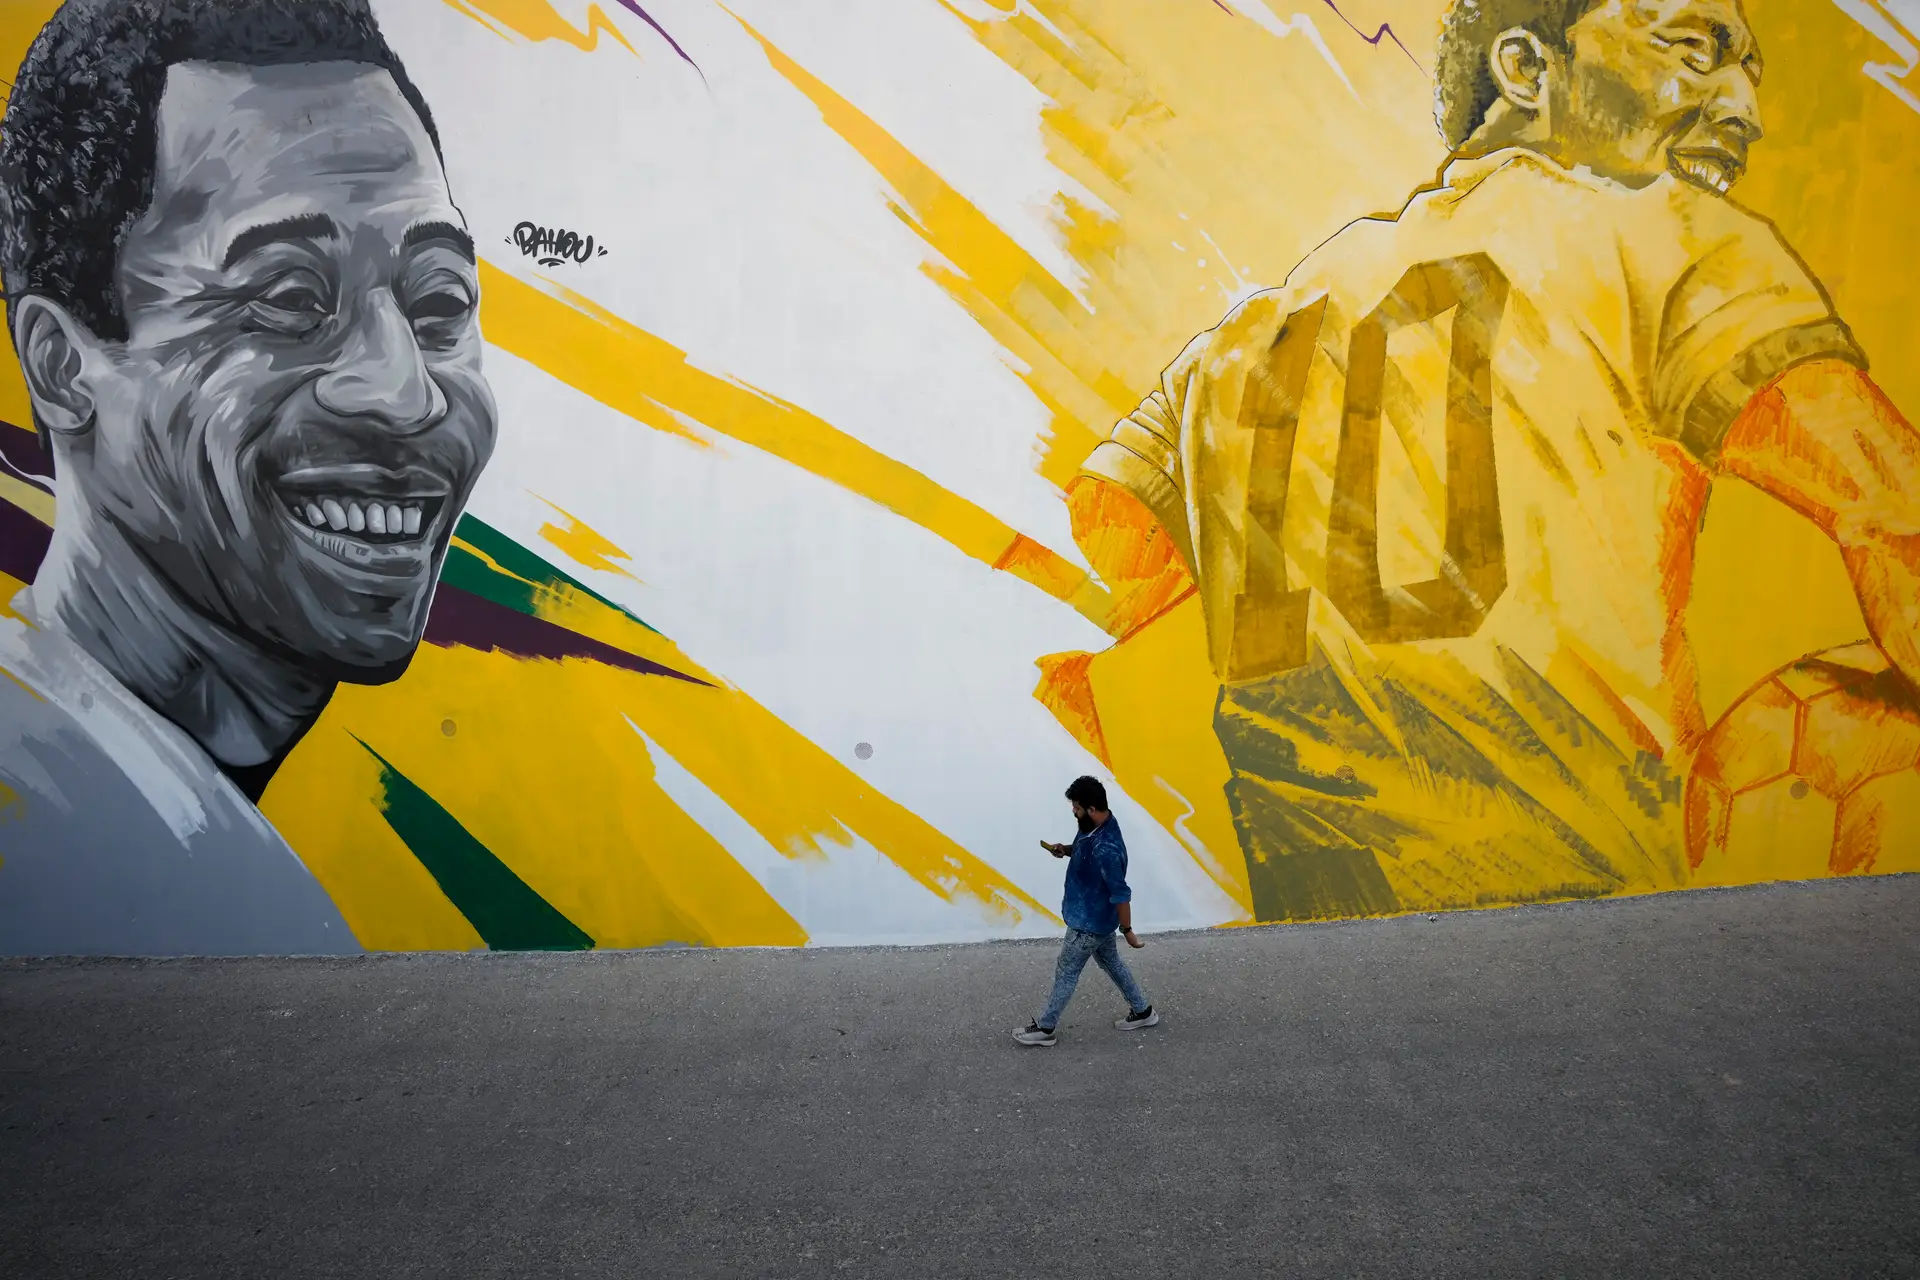 Estado de saúde de Pelé “não piorou nas últimas 24 horas”, diz hospital